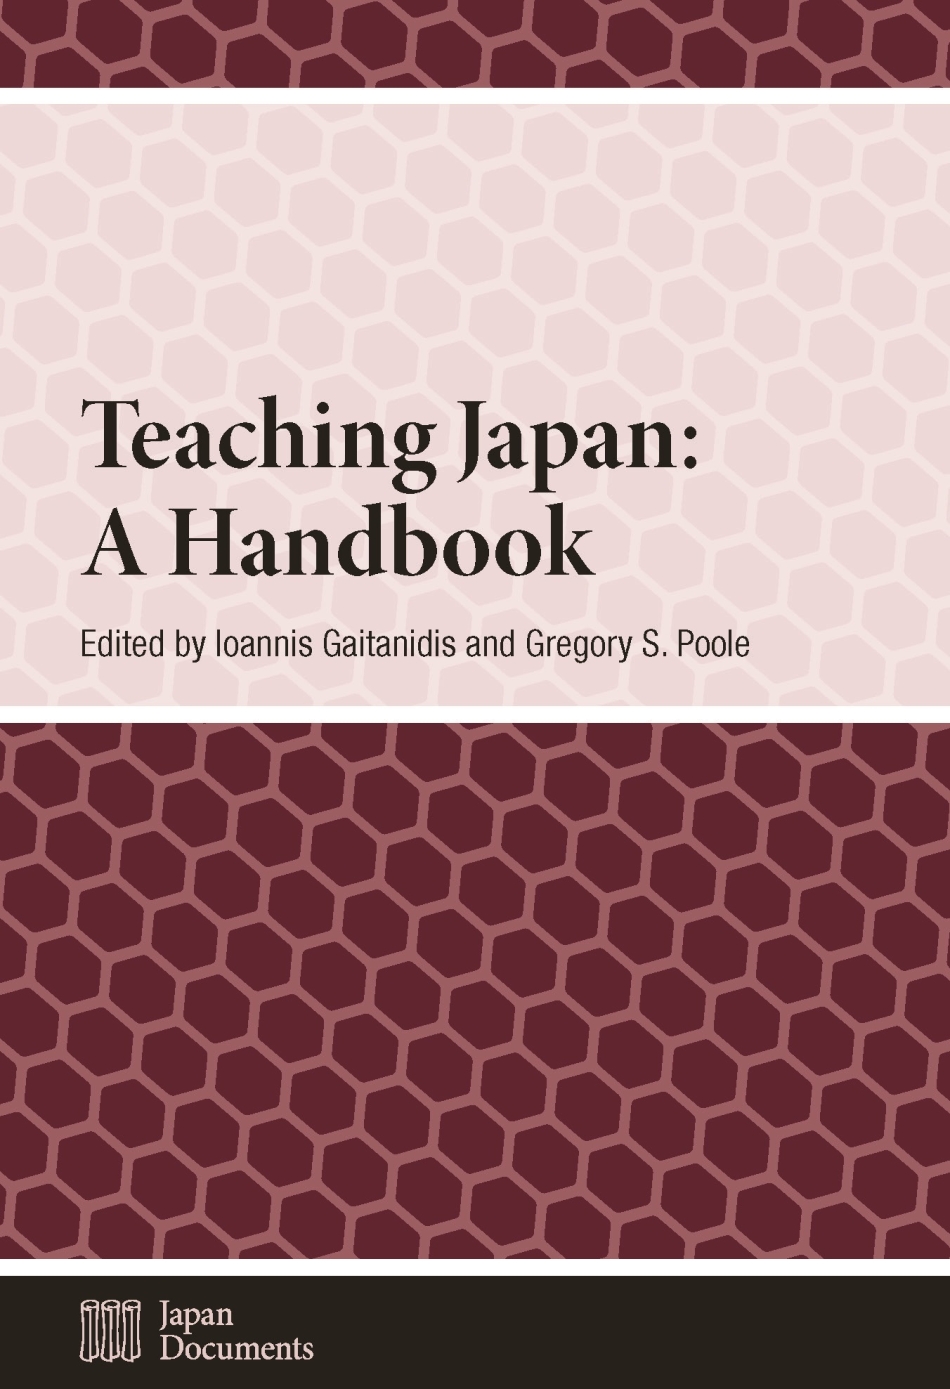 Teaching Japan: A Handbook.